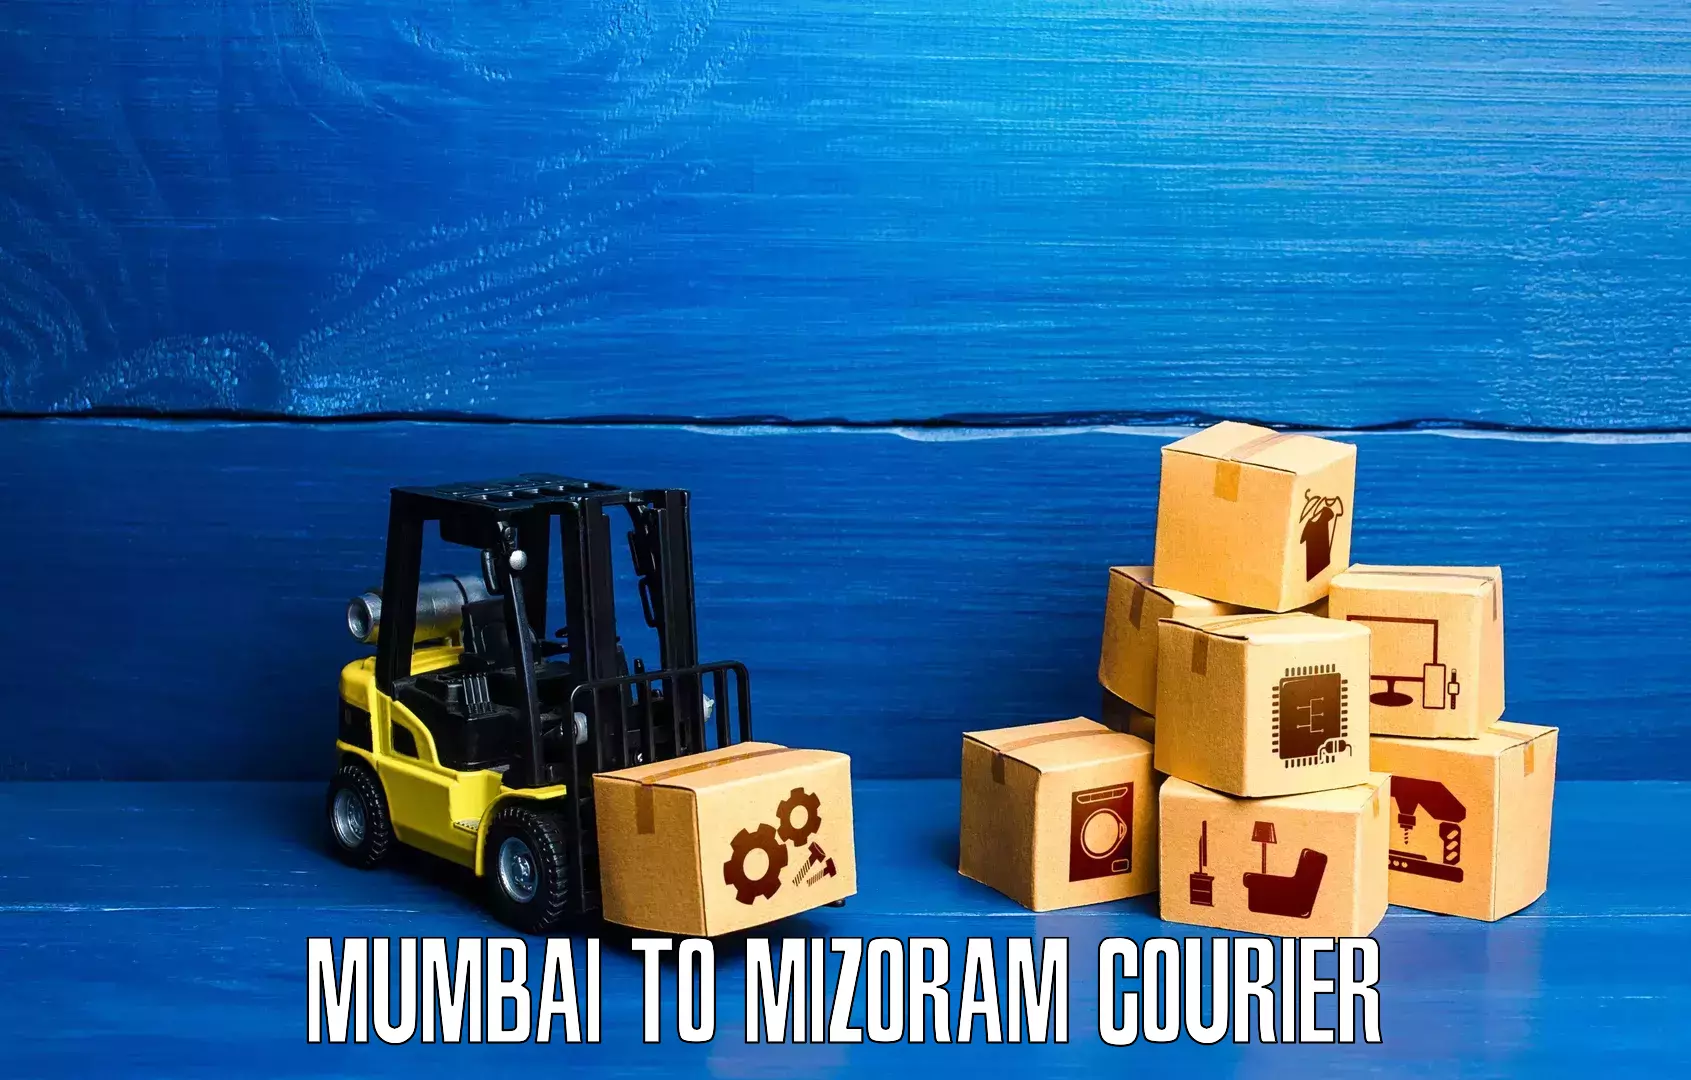 Multi-city courier Mumbai to Siaha